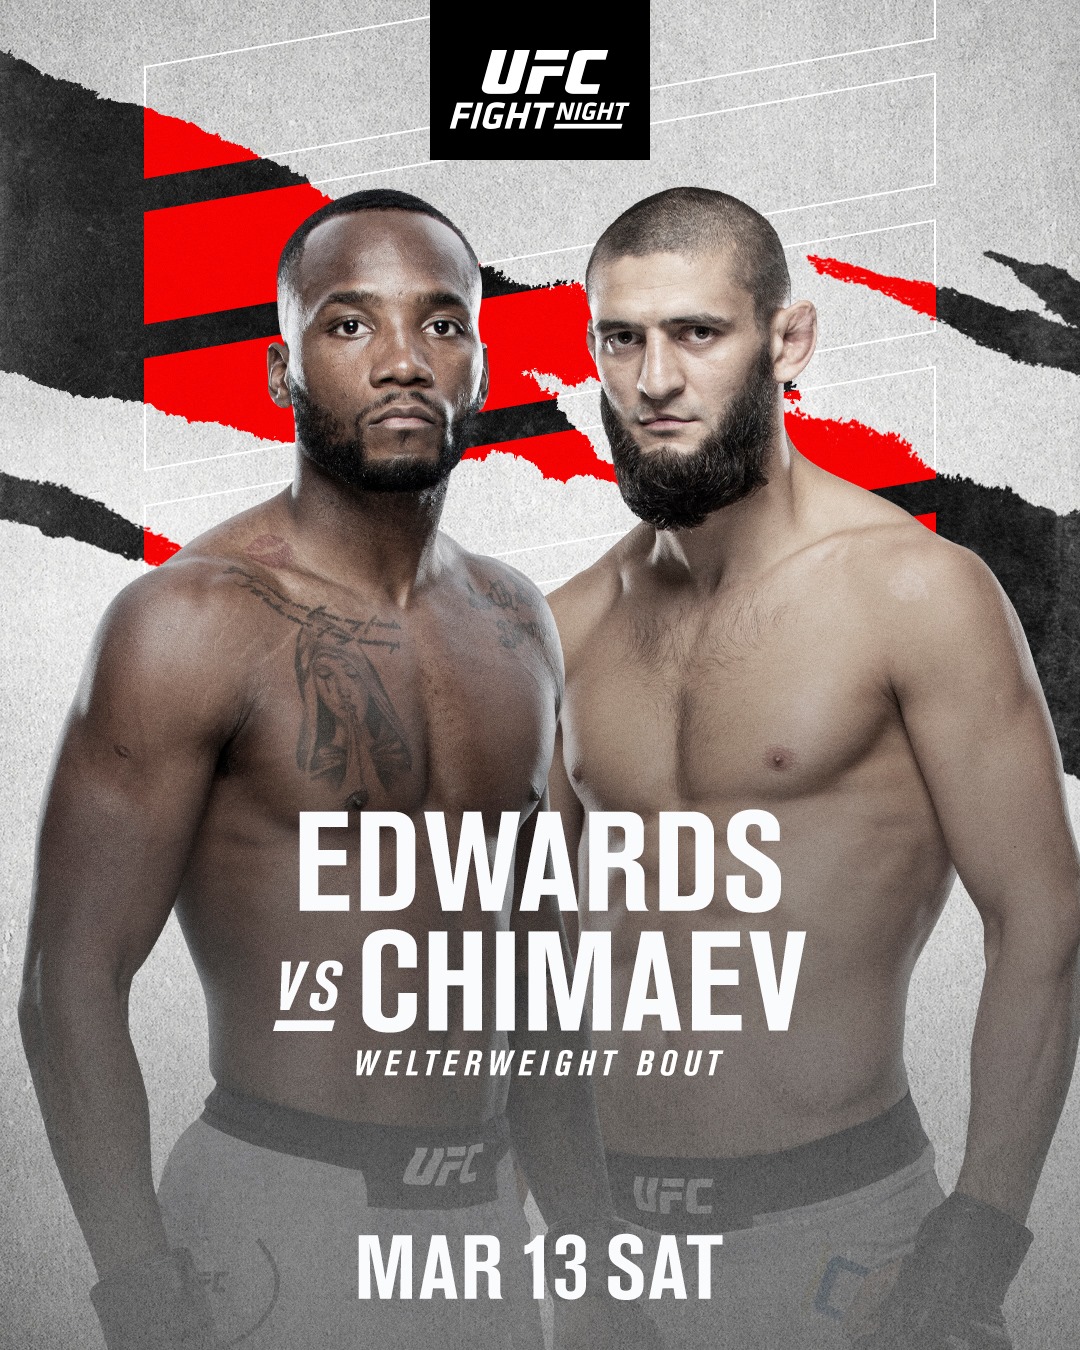 UFC Fight Night - Edwards vs. Chimaev Poster January 22, 2021